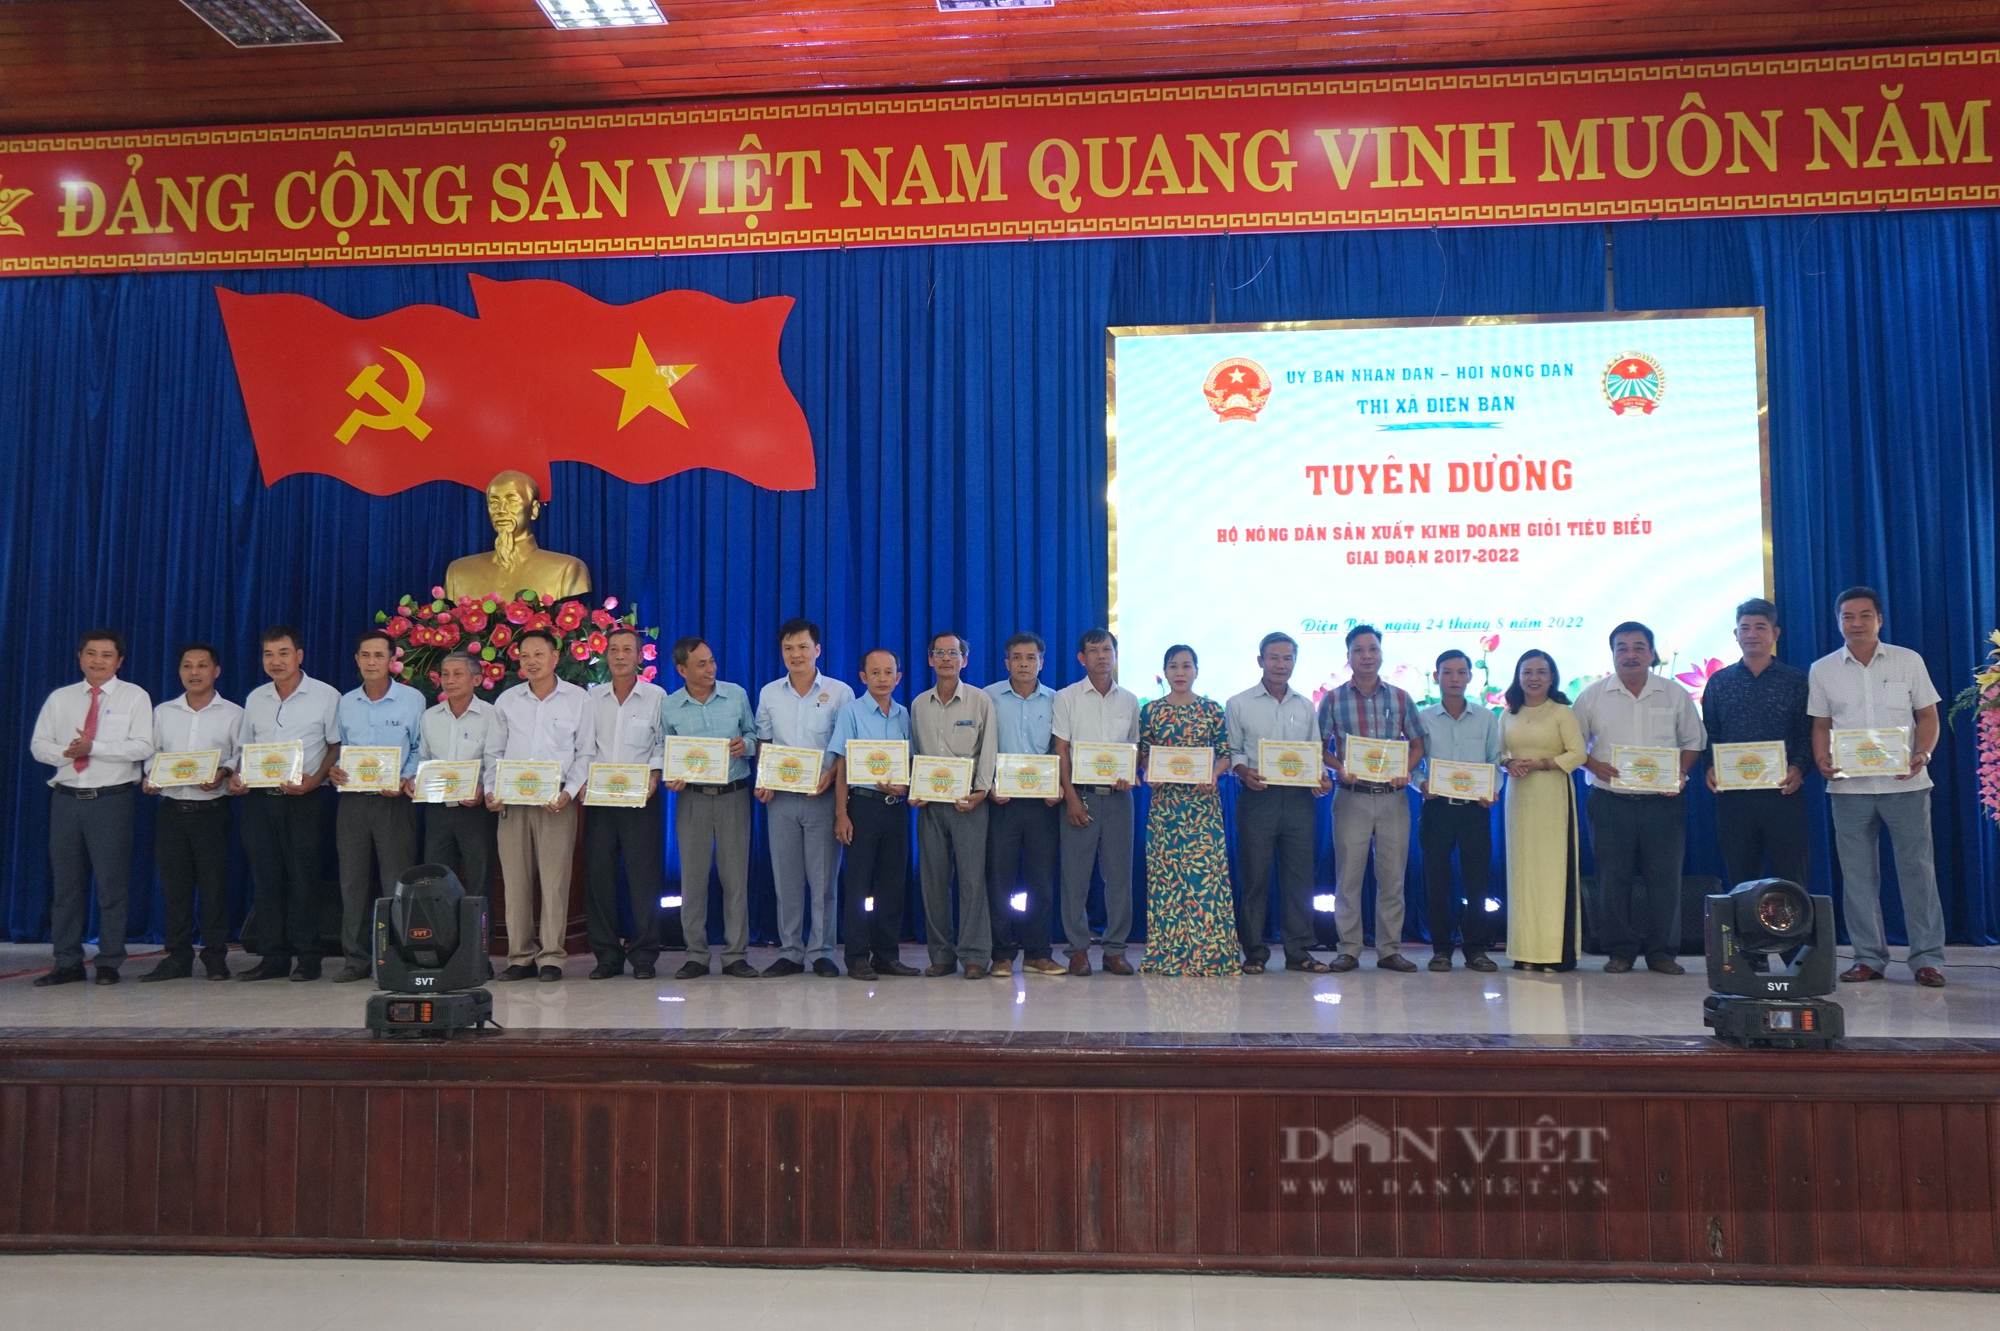 Quảng Nam: Phong trào Nông dân sản xuất kinh doanh giỏi góp phần giúp Điện Bàn chuyển dịch cơ cấu kinh tế nhanh, bền vững - Ảnh 4.